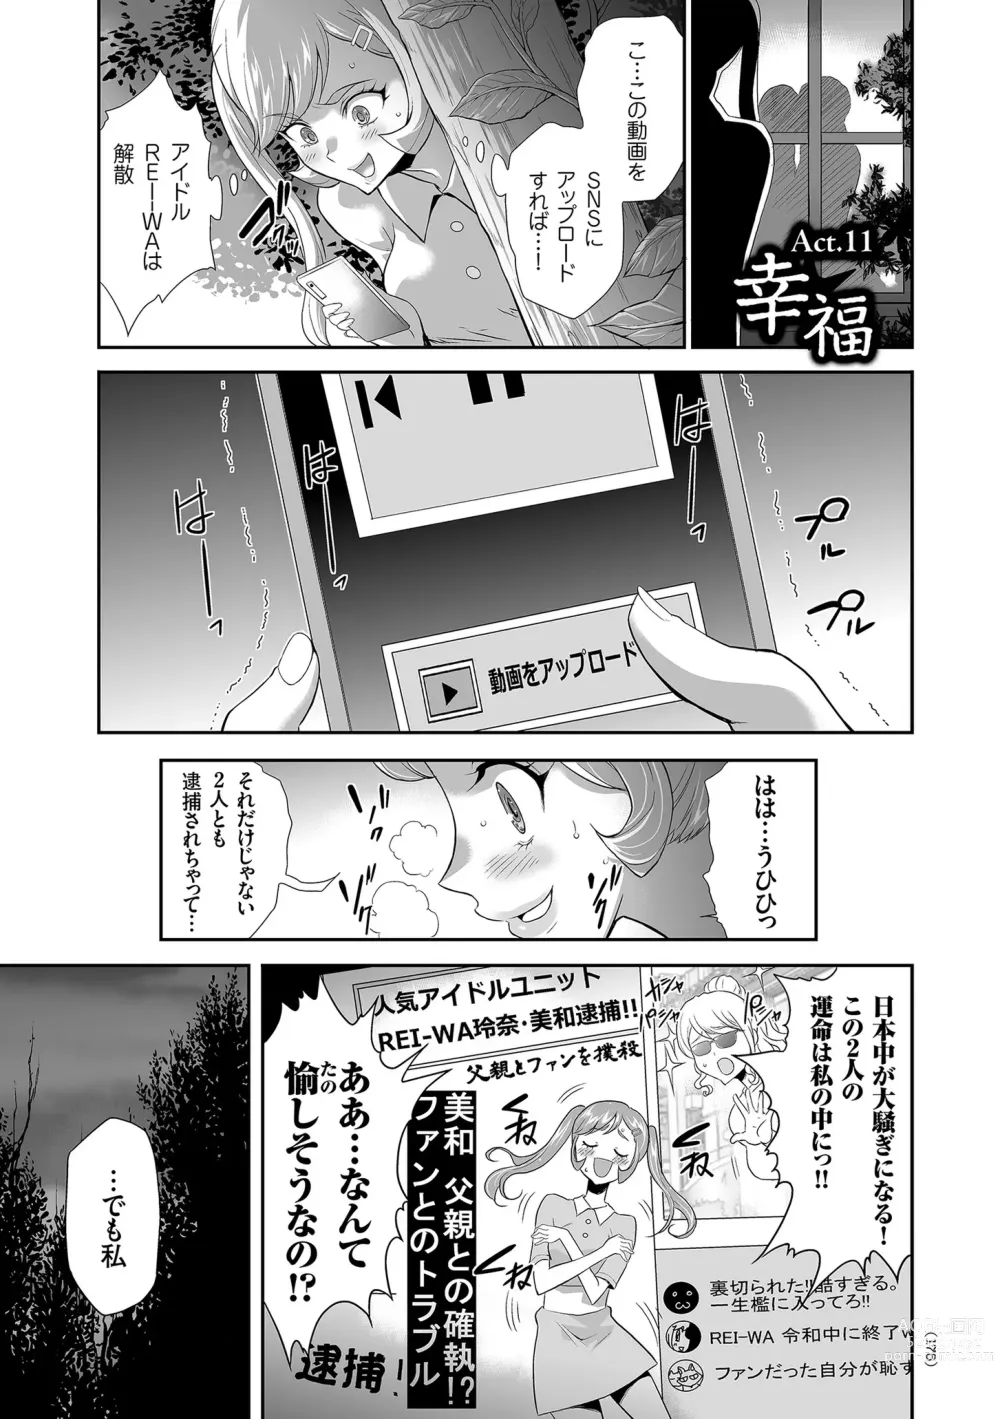 Page 175 of manga Idol Kankin Live!